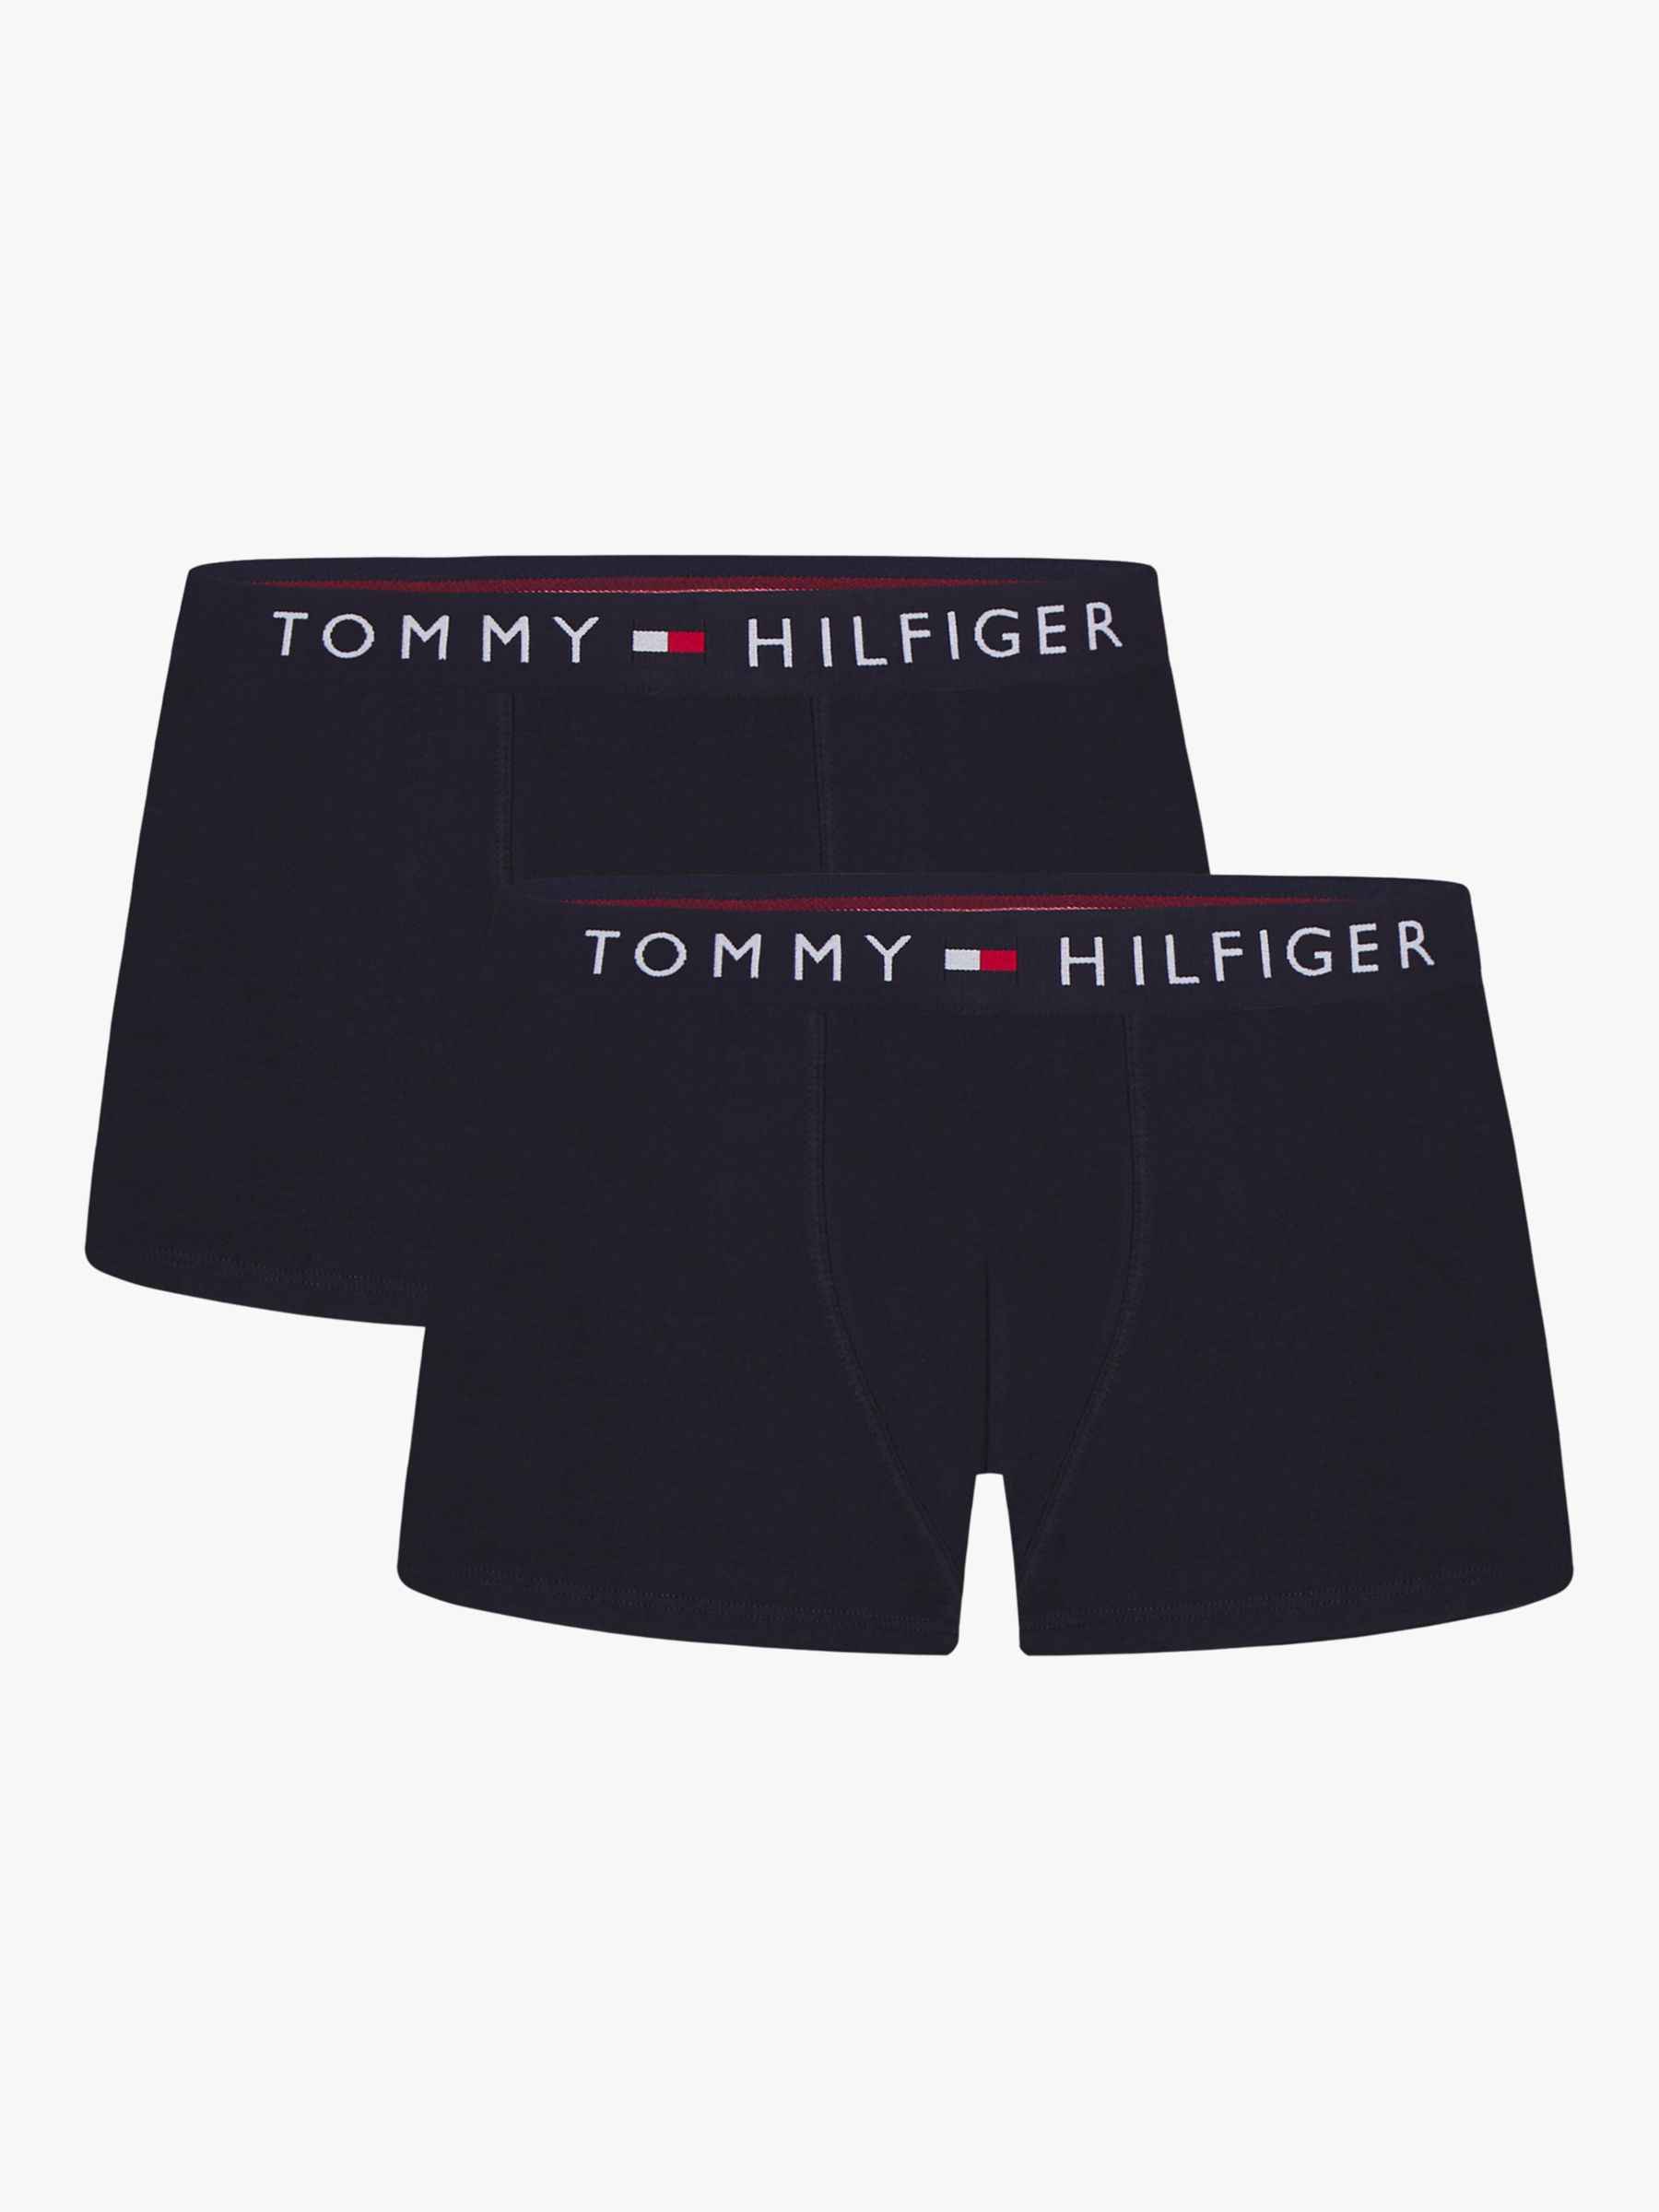 Tommy Hilfiger Children's Tommy Original Trunks, Pack of 2, Desert Sky ...